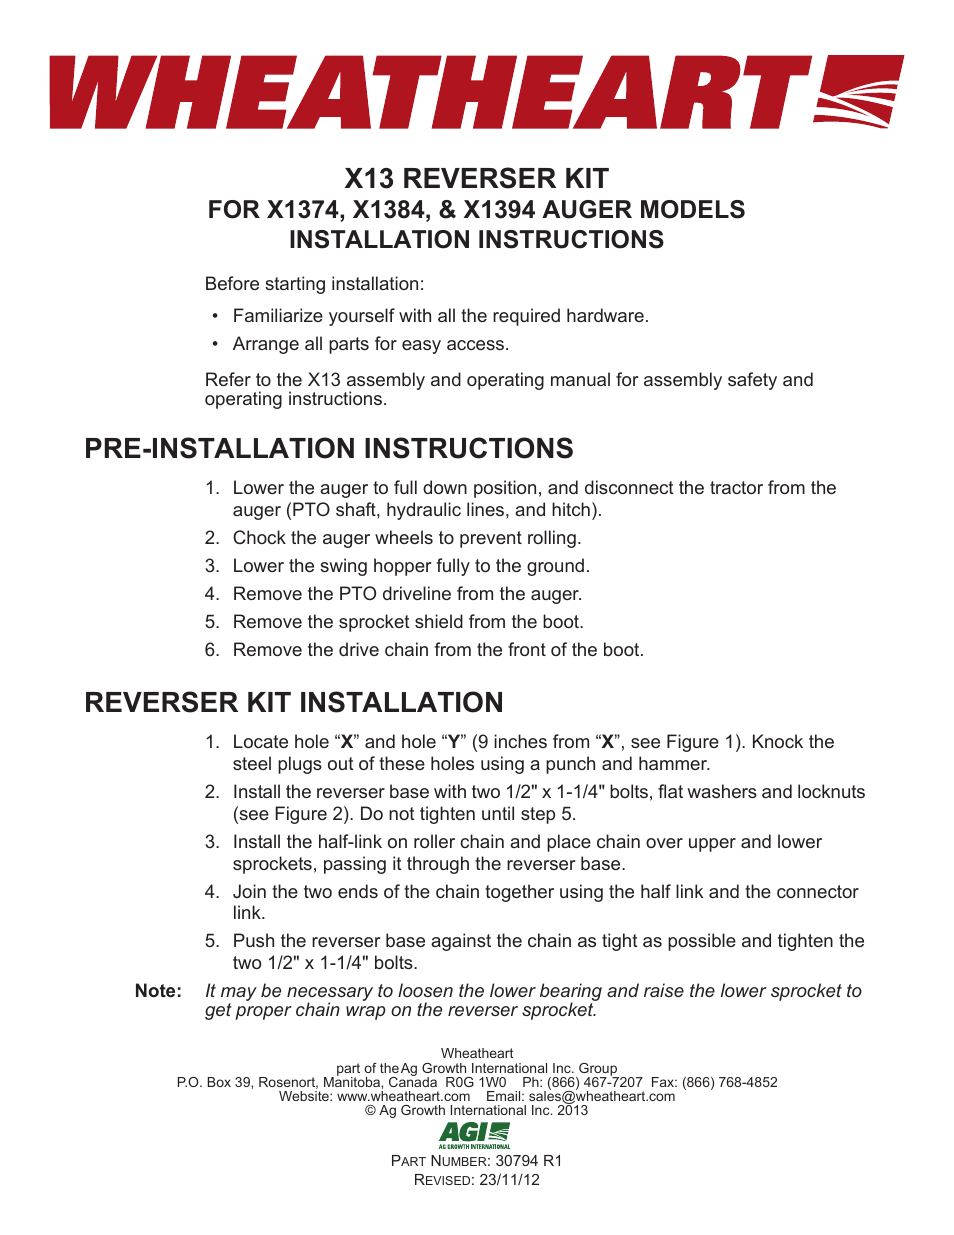 X13 Reverser Kit